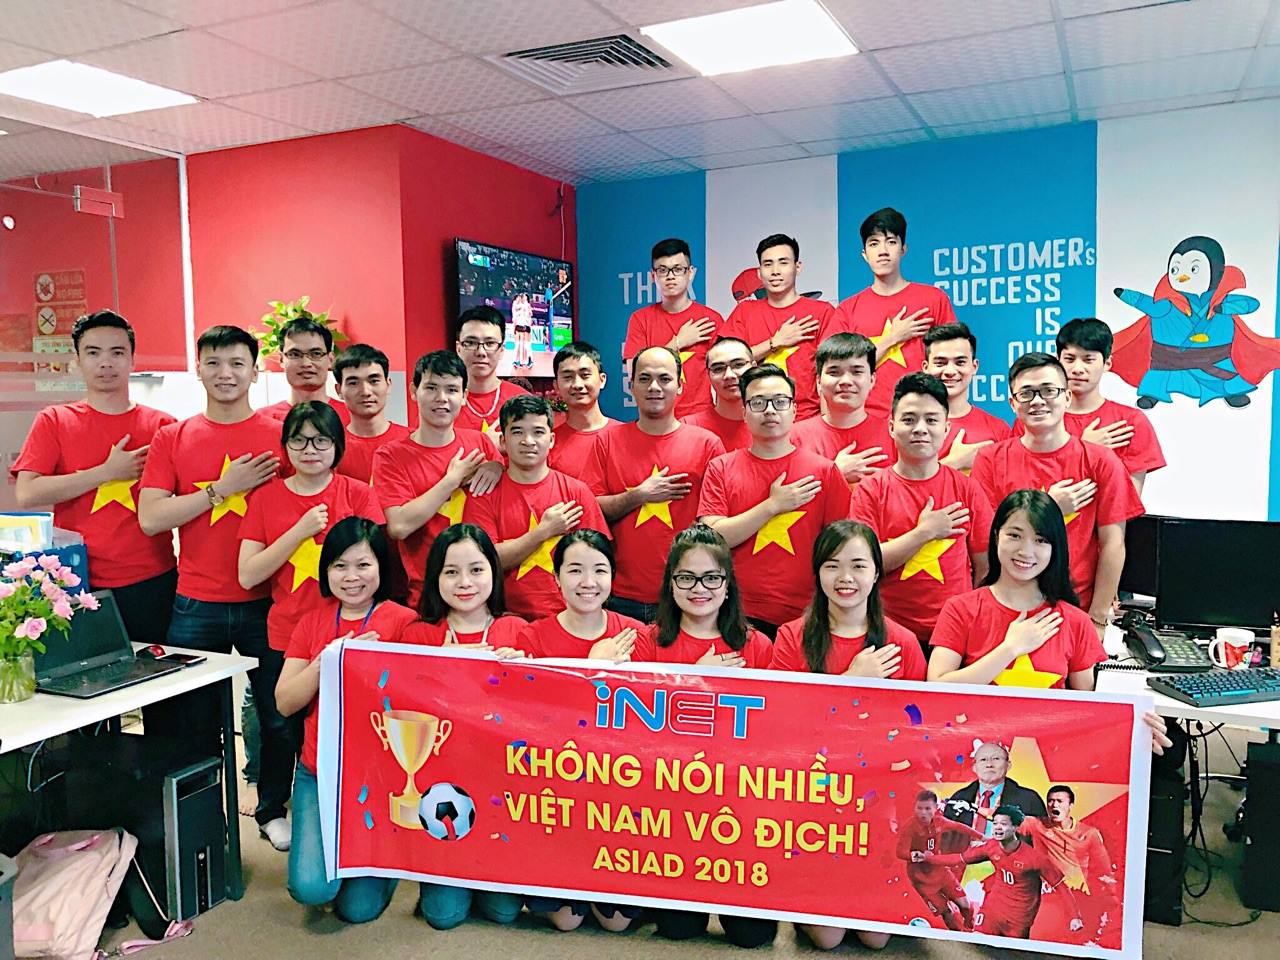 Hình ảnh Stt cổ vũ bóng đá Việt Nam trước trận Việt Nam - Hàn Quốc